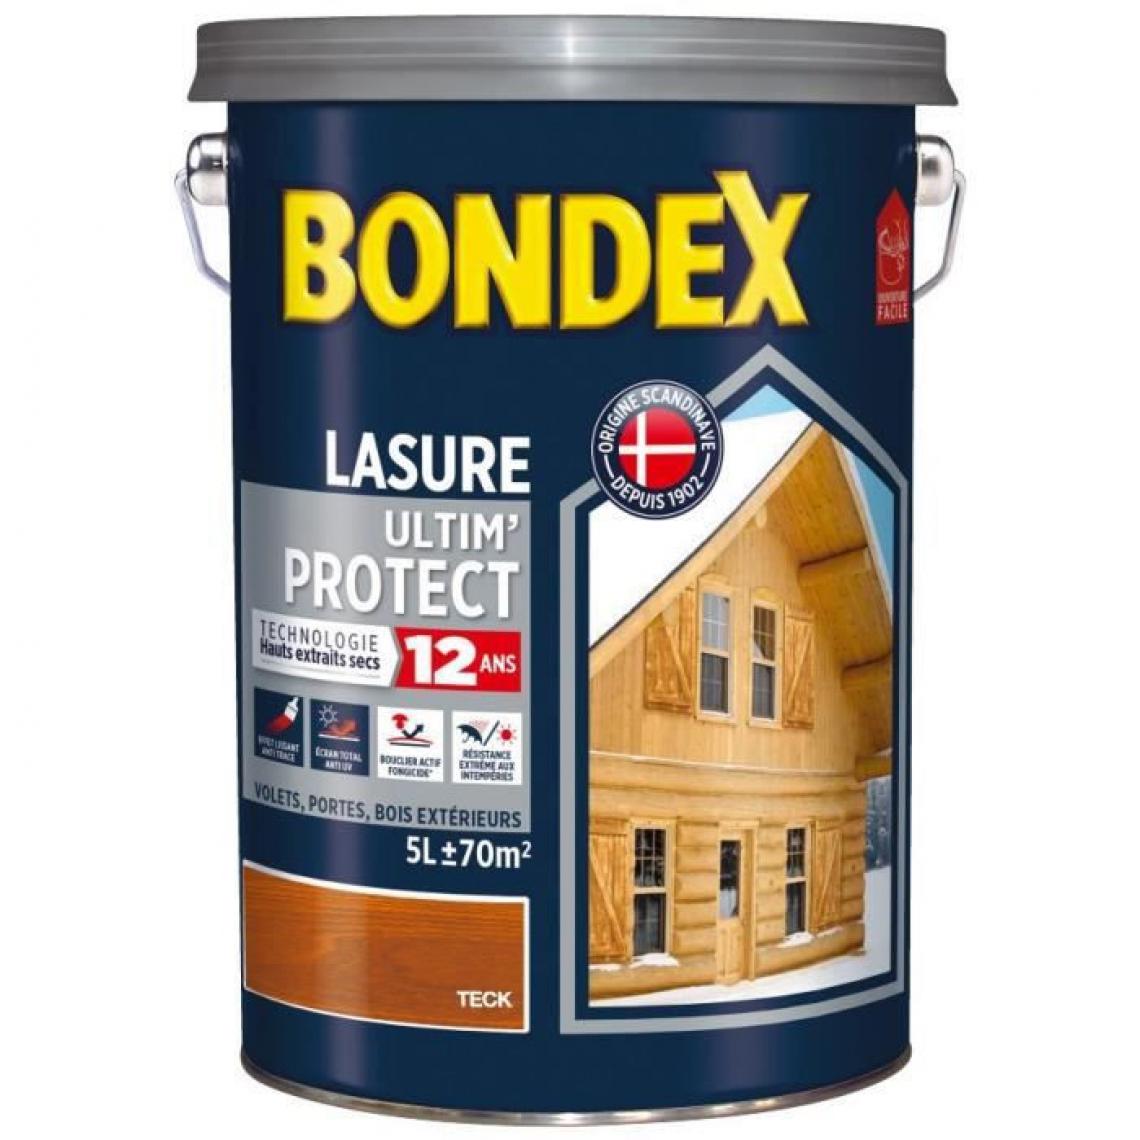 Bondex - BONDEX asure Ultim Protect 12 Ans - Teck Satin, 5L - Peinture & enduit rénovation